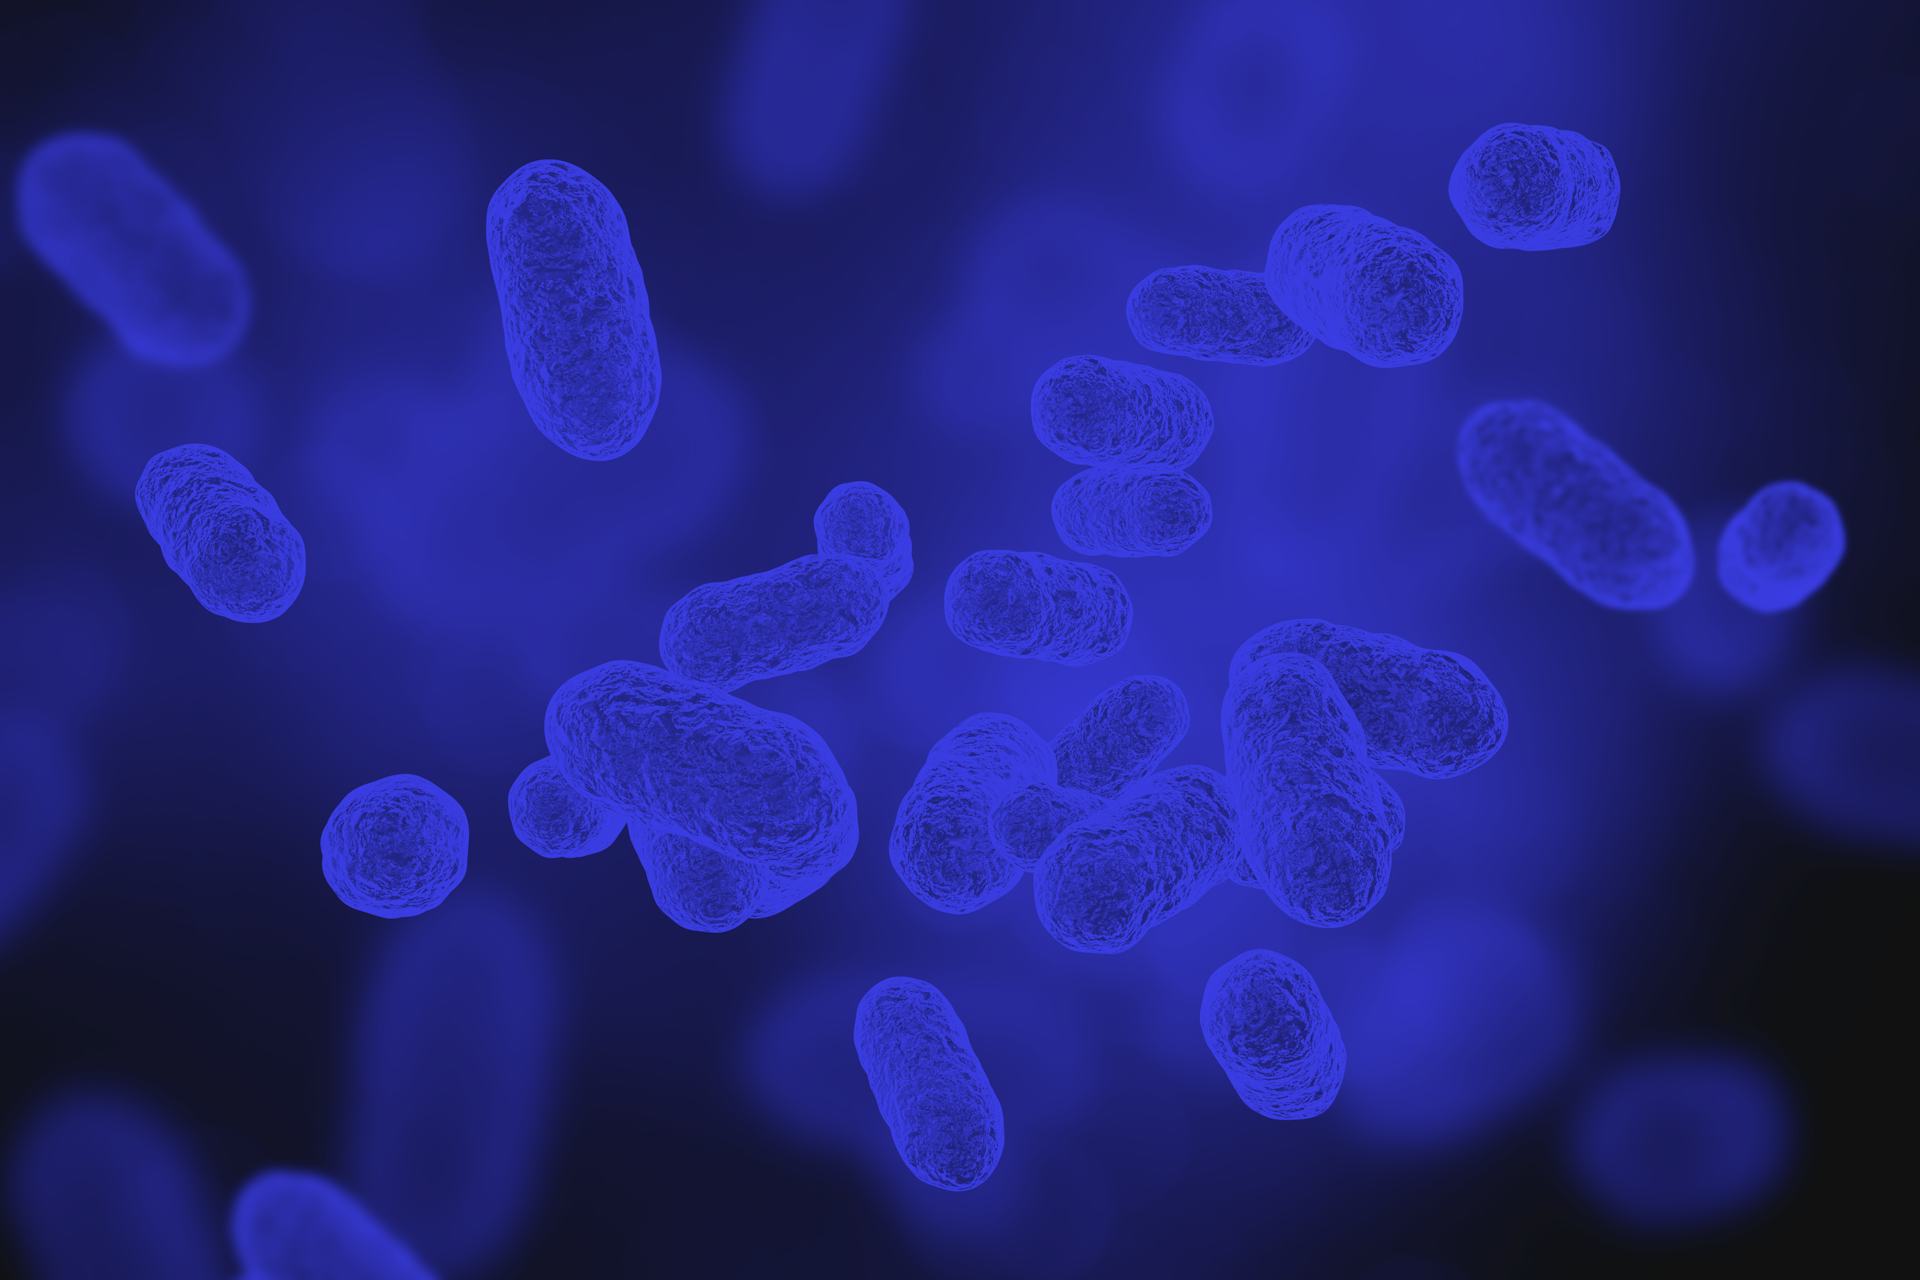 Gut Microbiome Imbalances Influence The Likelihood Of Long Covid